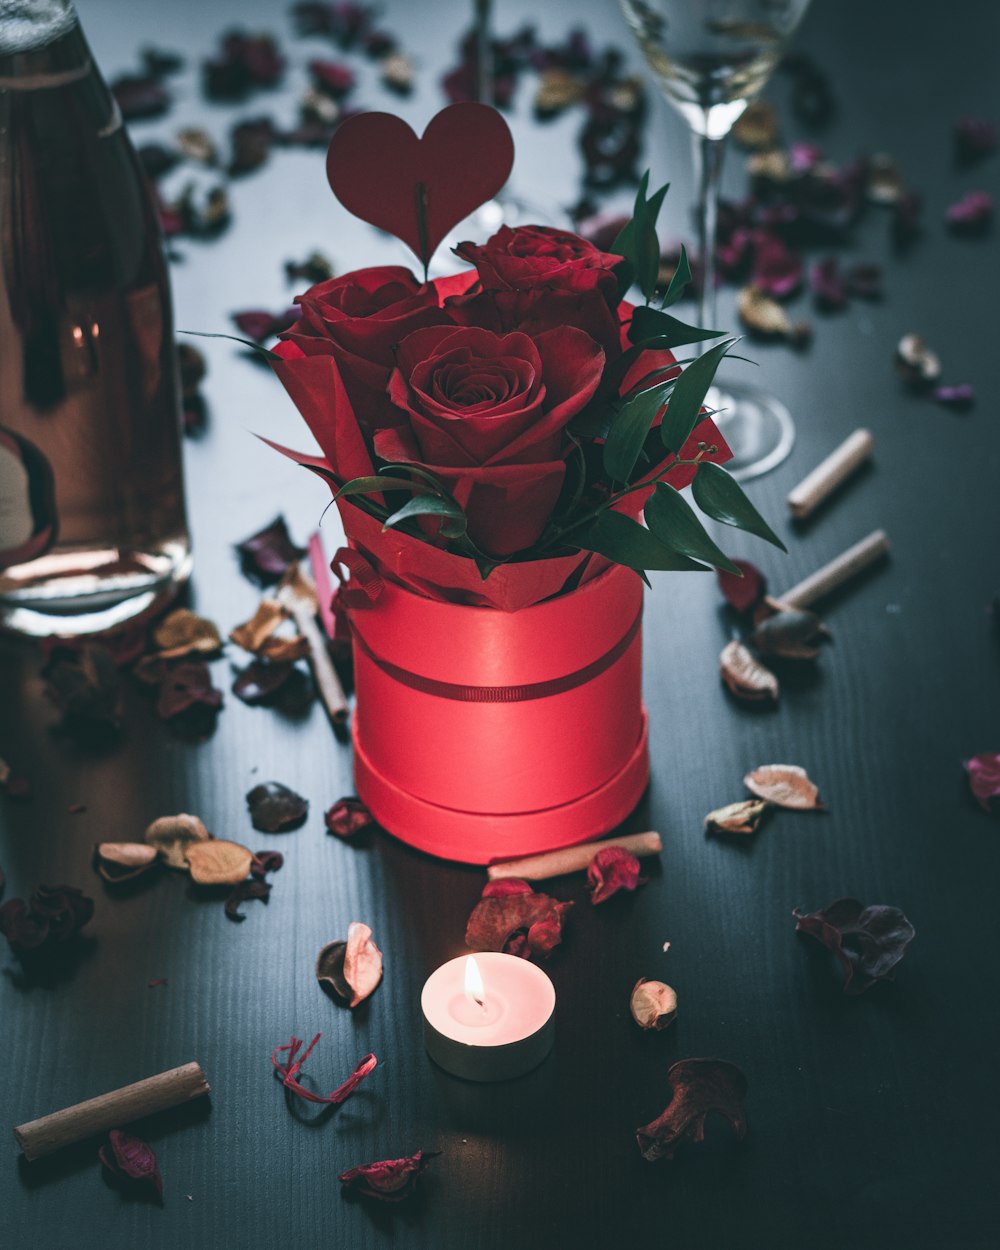 red rose in red ceramic vase